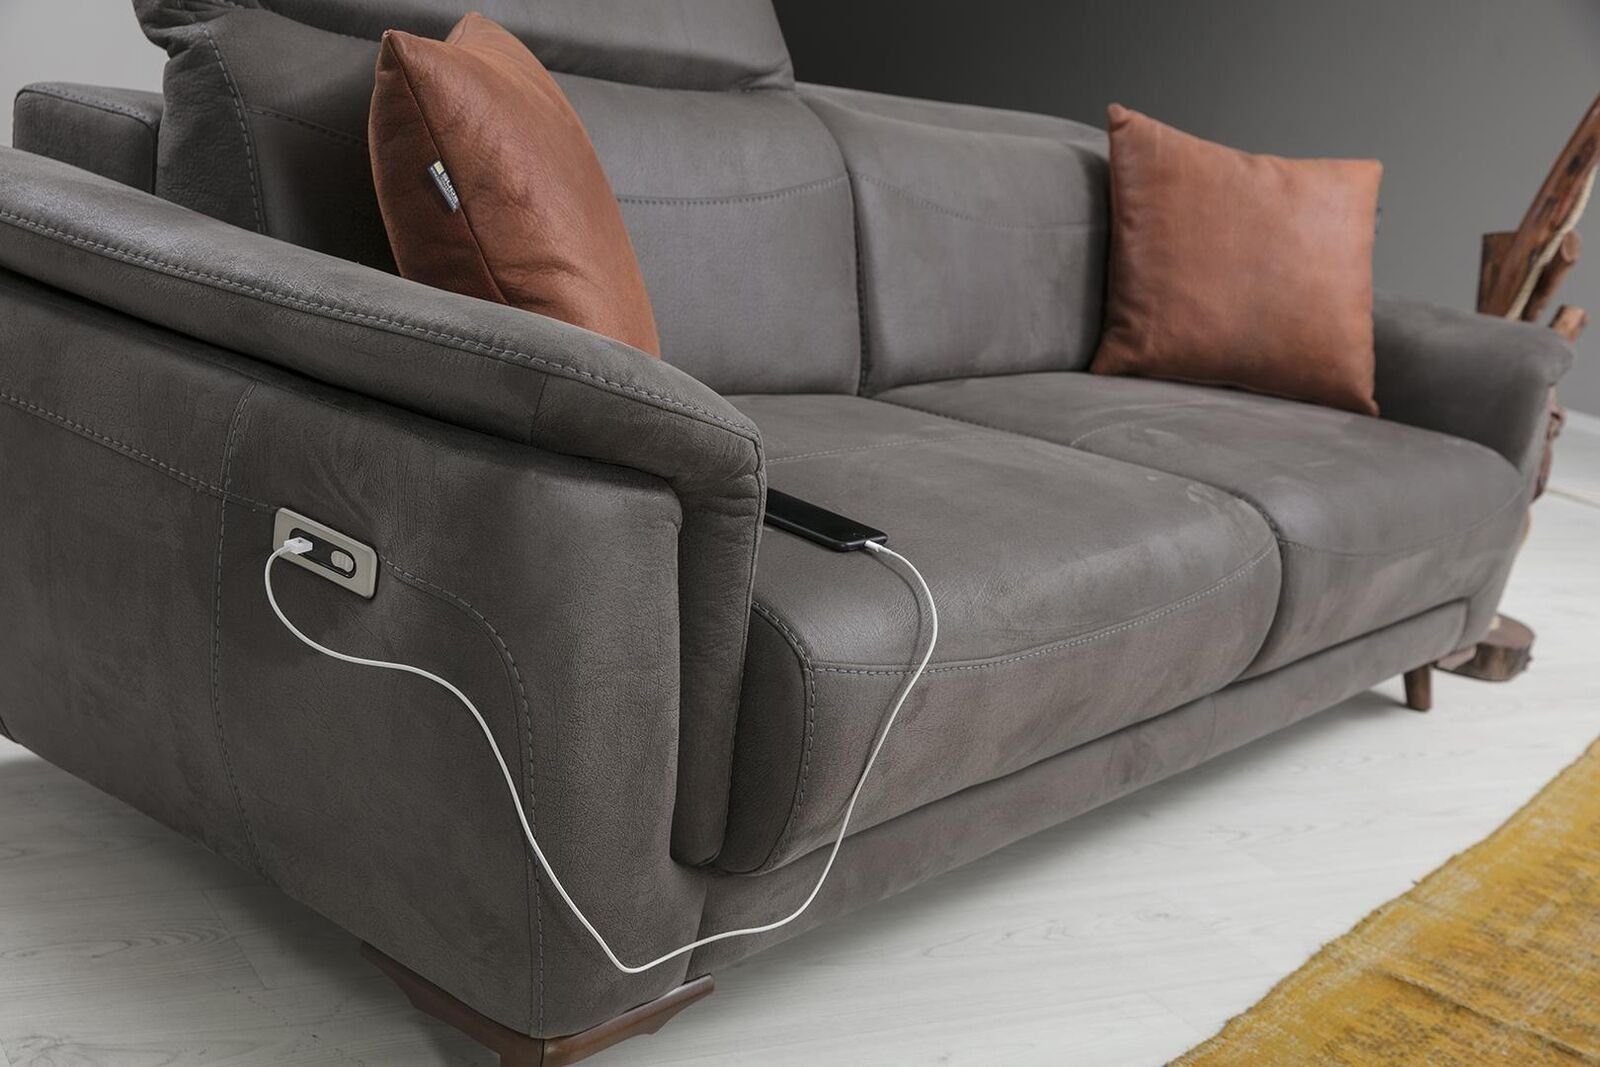 Sofa Teile, 1 Made Polstermöbel, Luxus Europa in Modern Couch Wohnzimmer 3-Sitzer Sitzmöbel JVmoebel